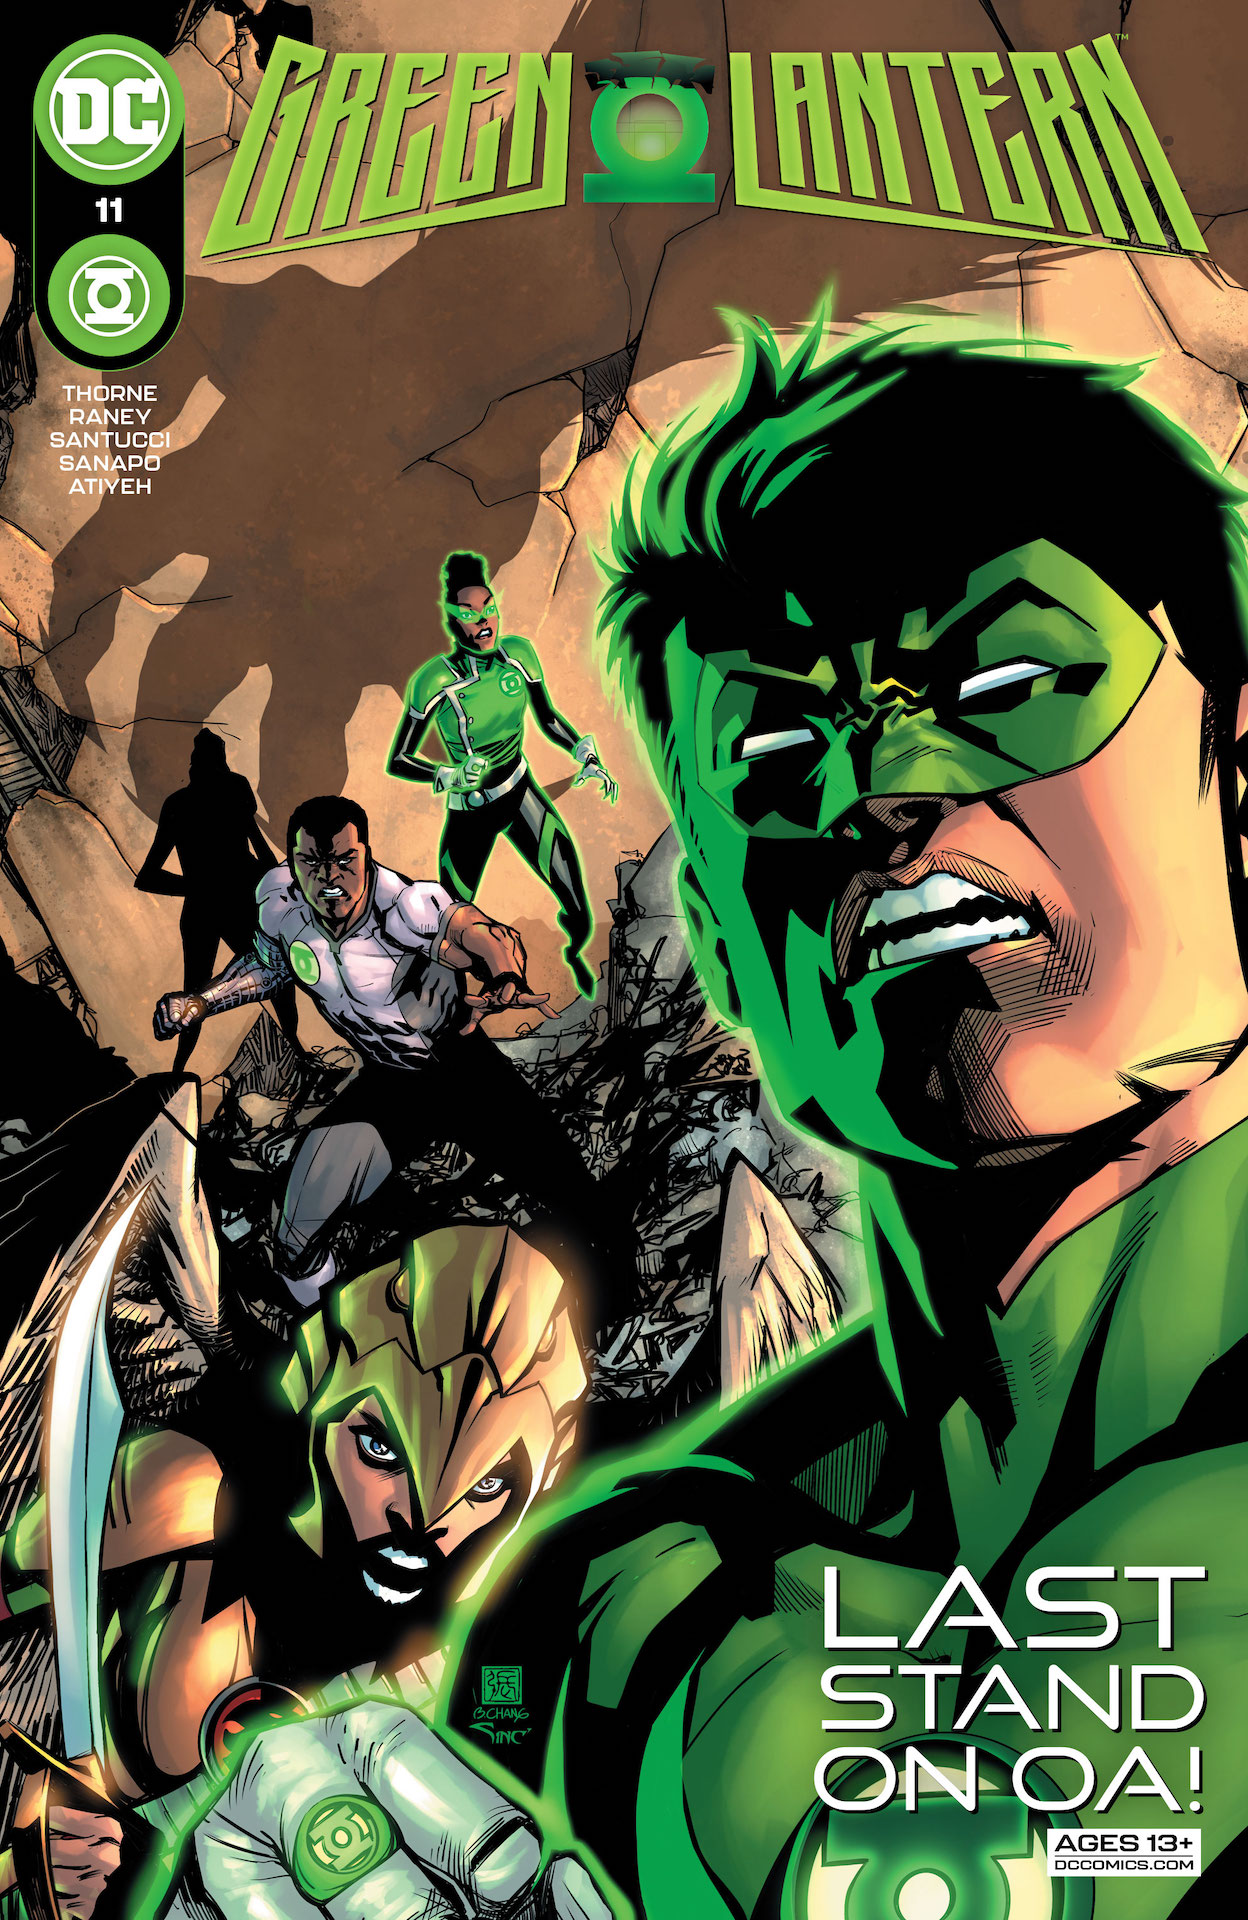 DC Preview: Green Lantern #11